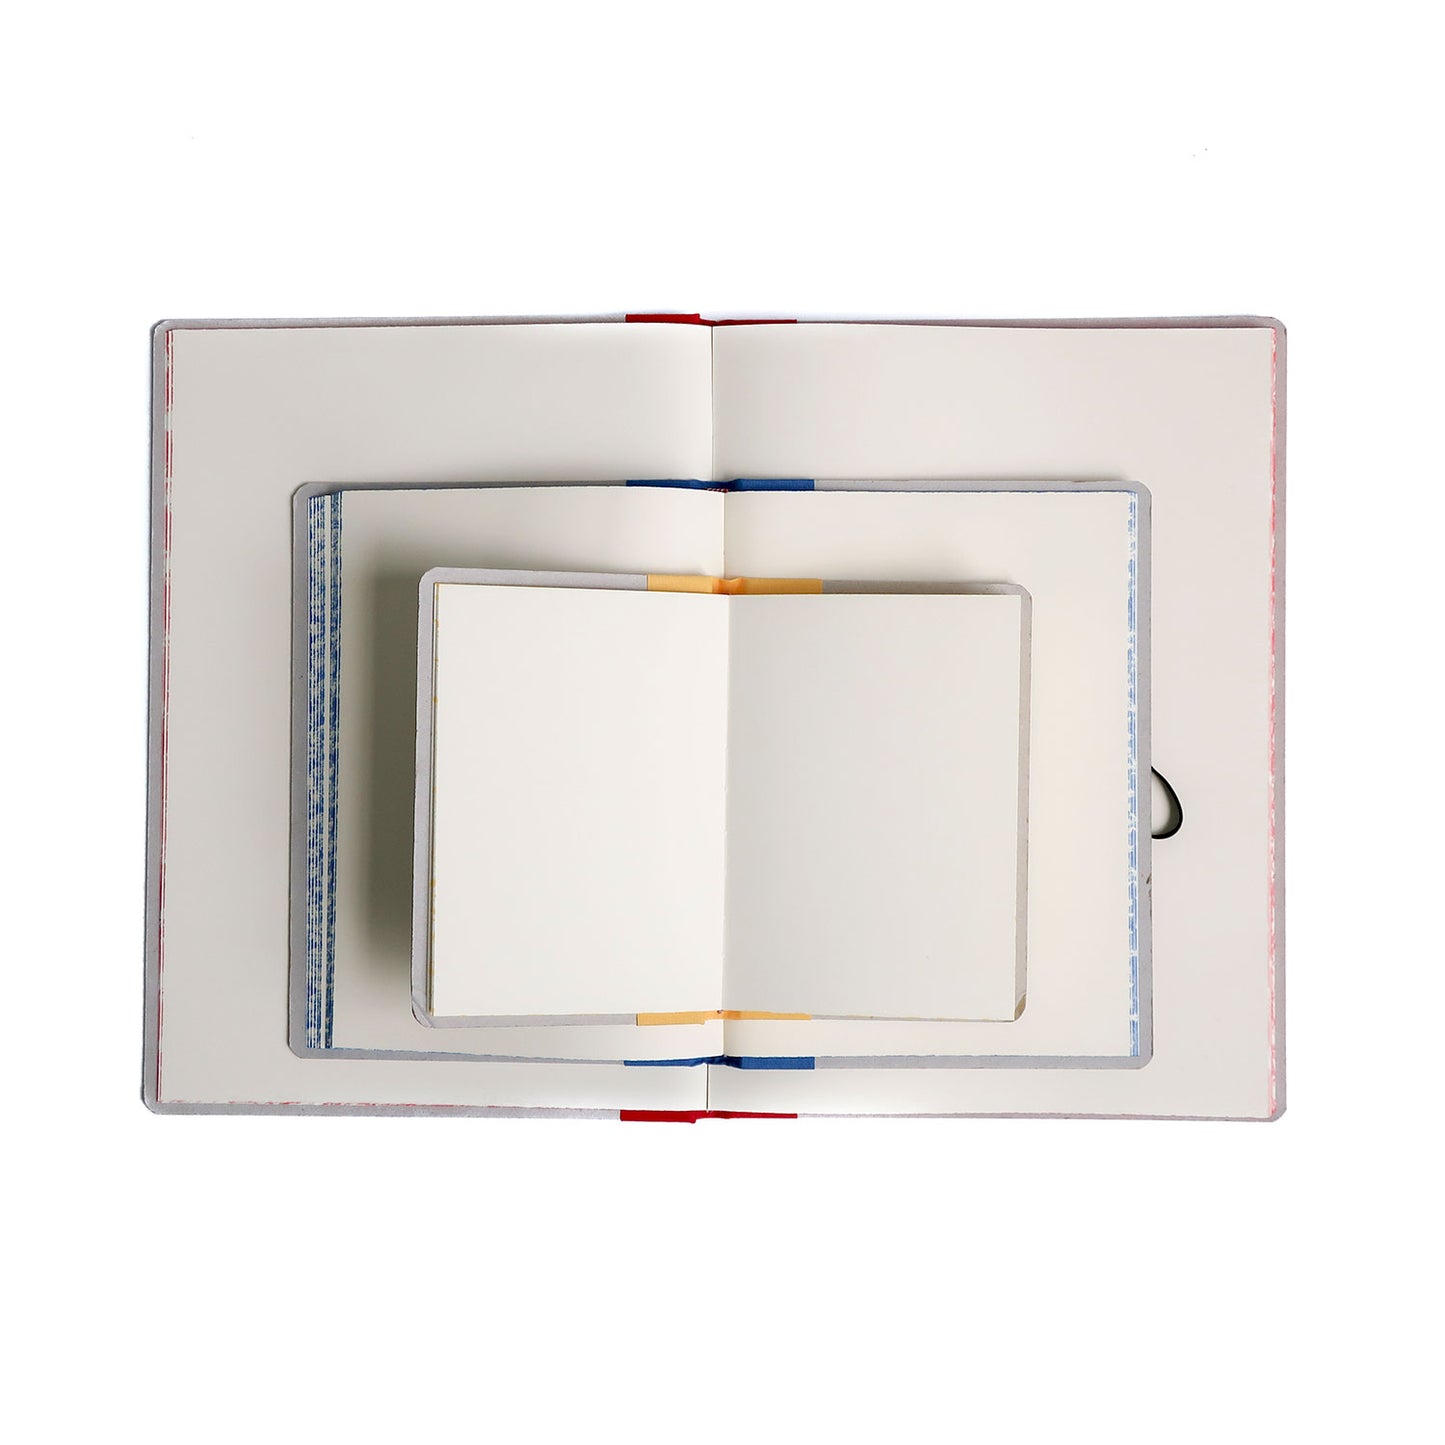 Cardboard Notebook with Band/ A5 (EMILIO BRAGA)